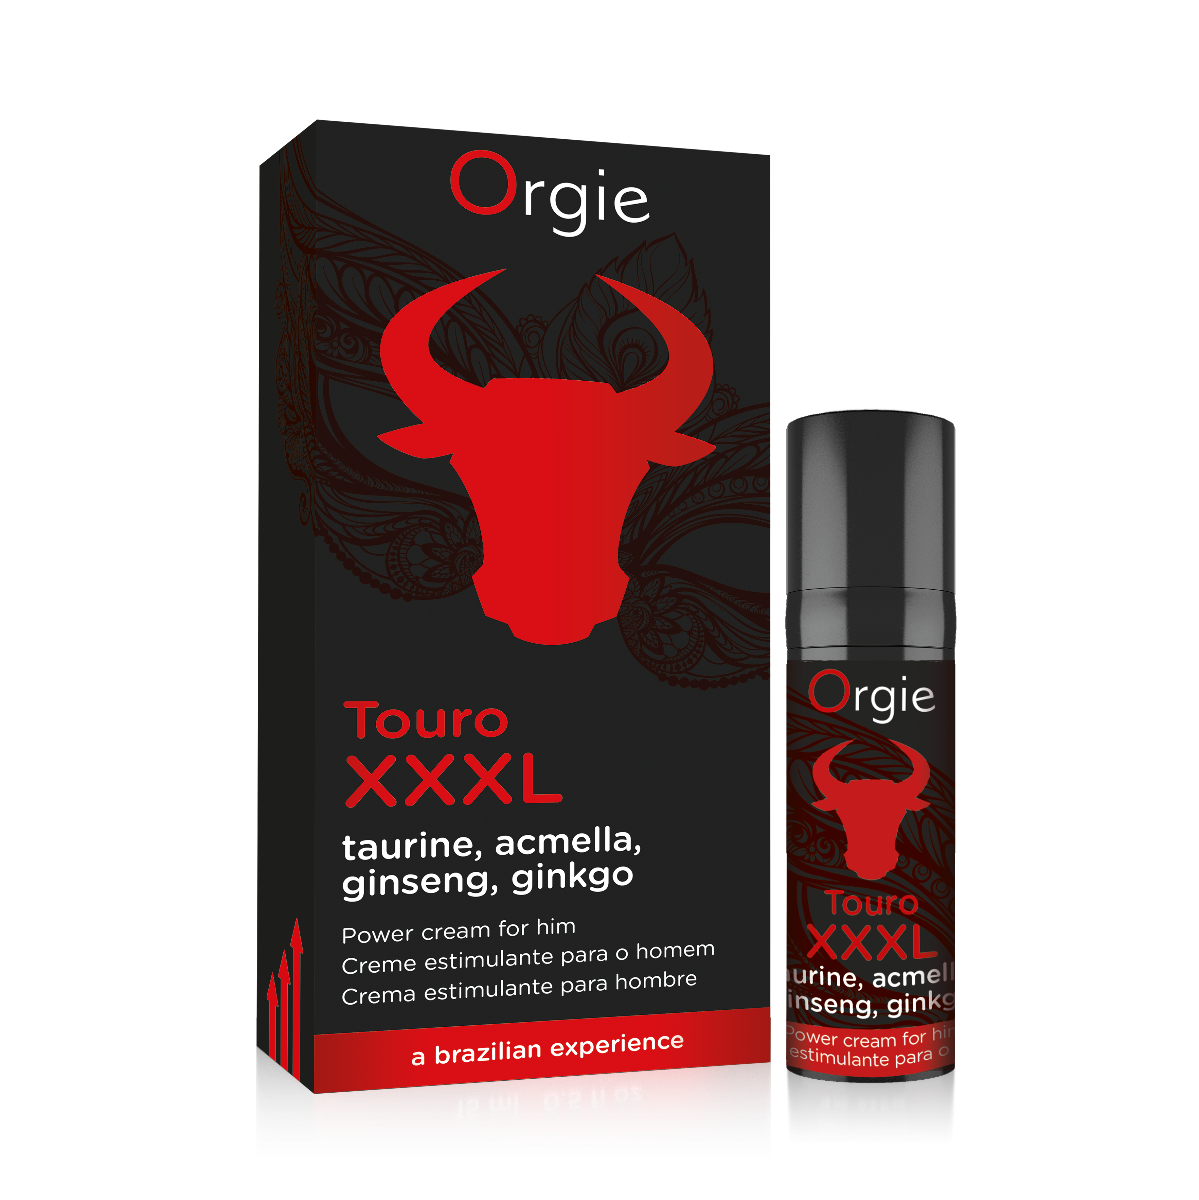 Orgie Touro XXXL Erection Enhancer and Enlarger Cream - UABDSM